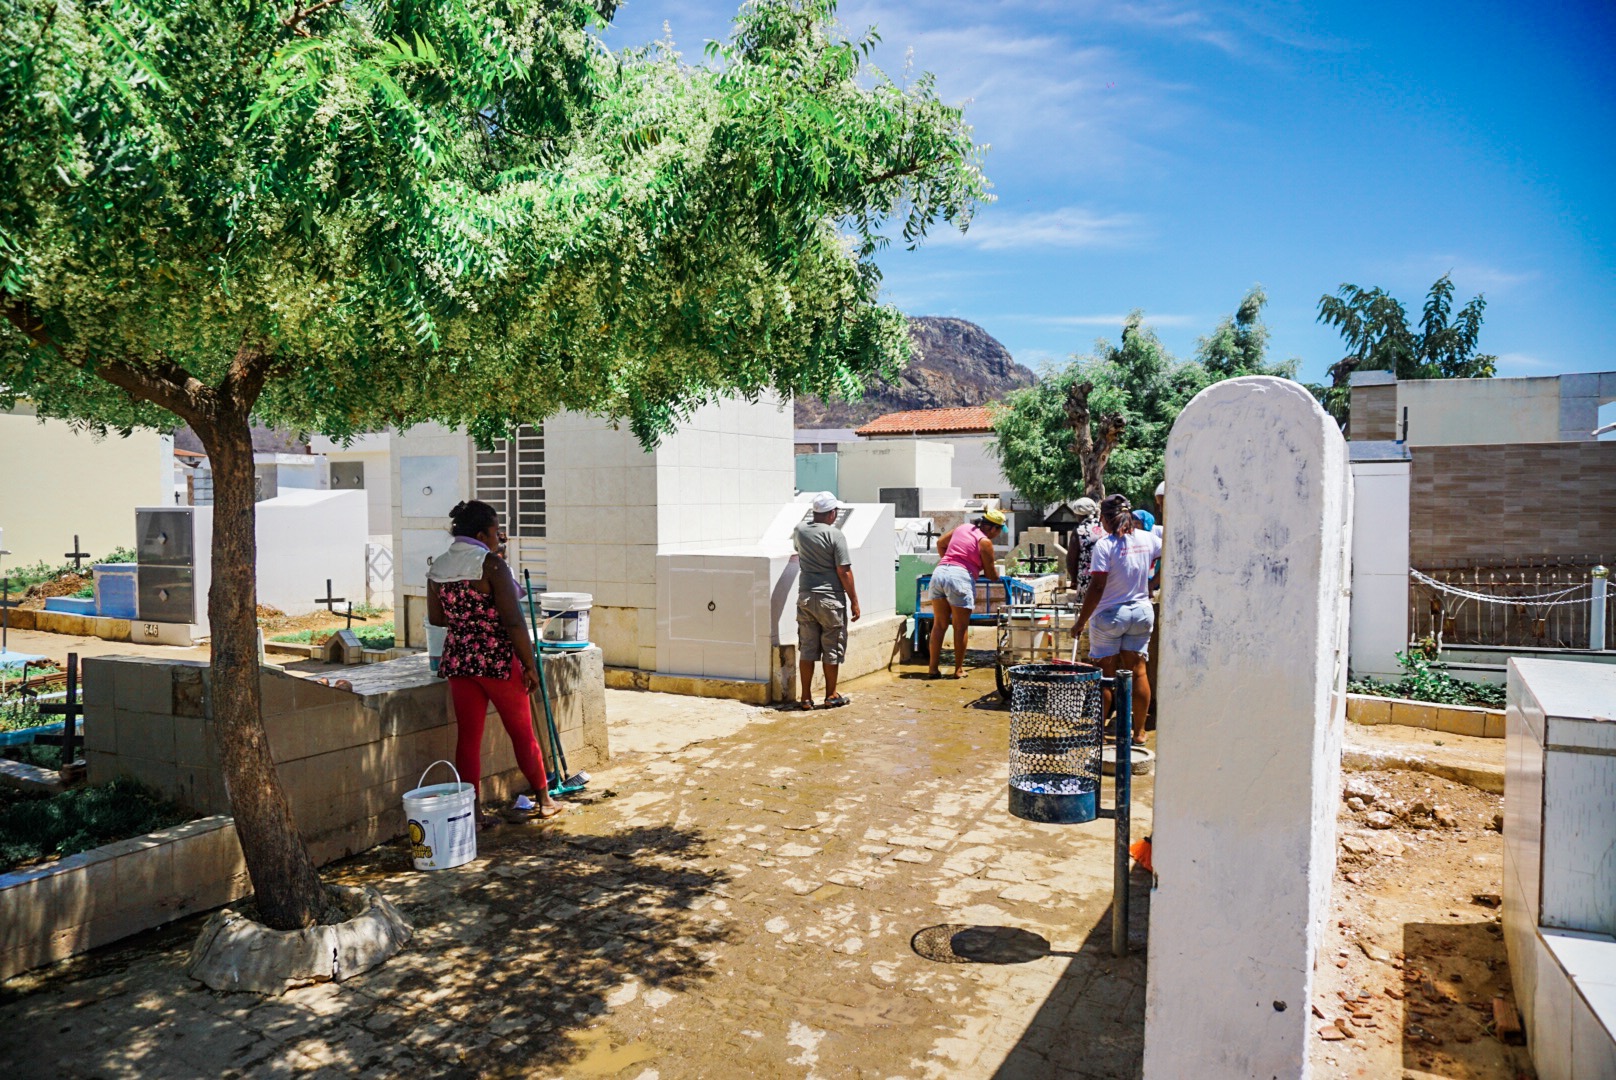 Cemitério de Serra Talhada está pronto para visitas